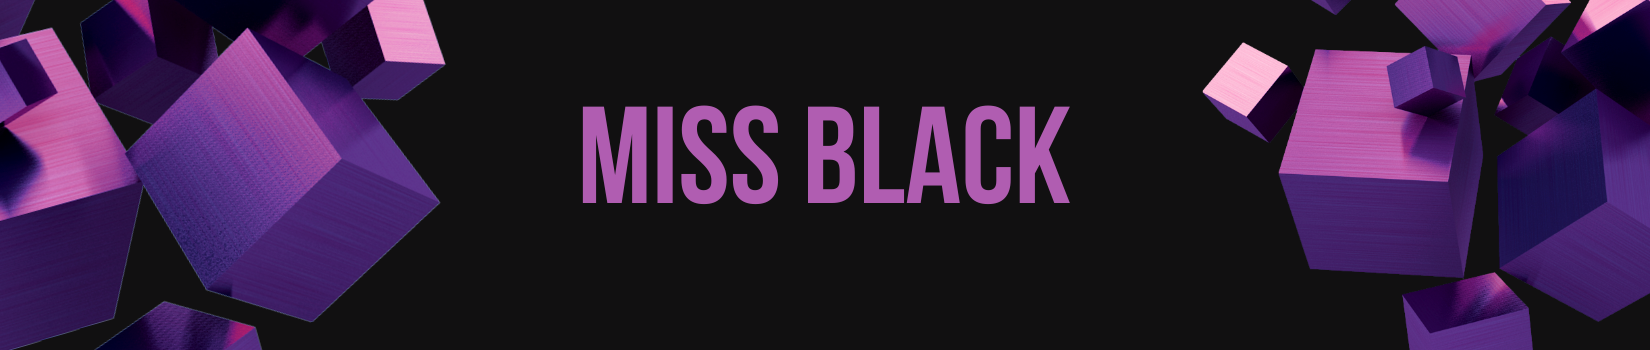 miss black